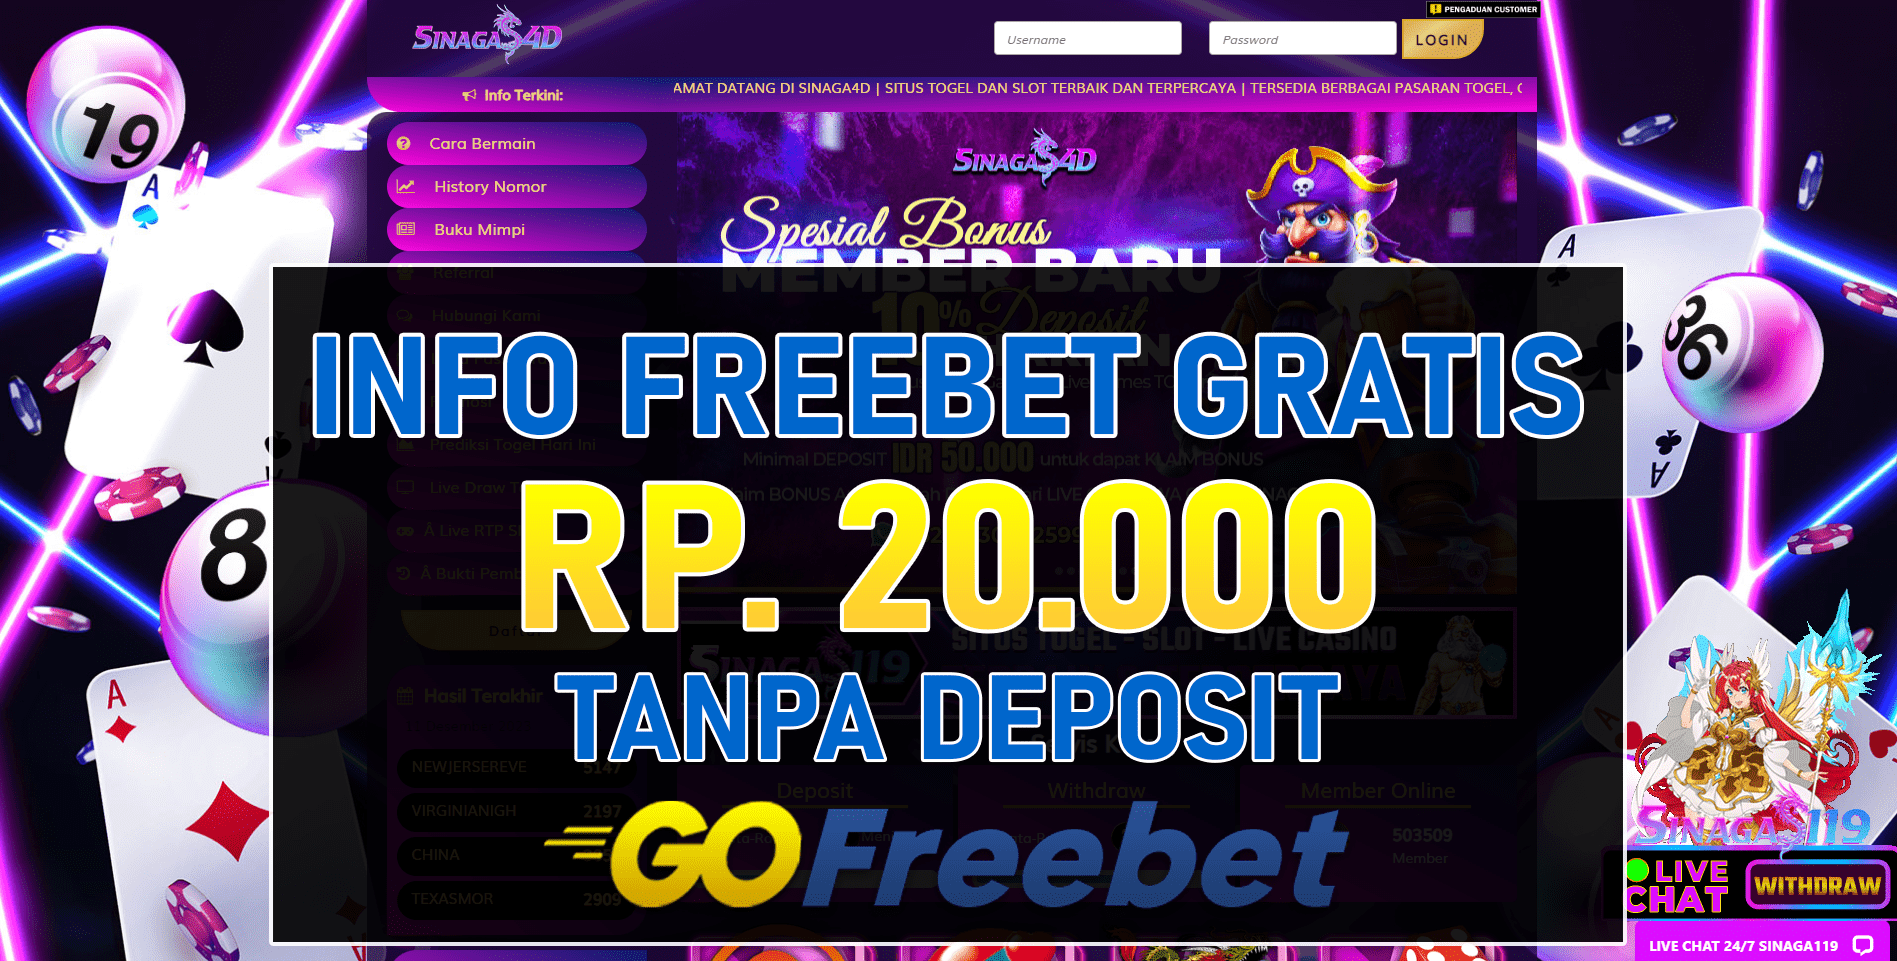 Sinaga4d Freebet Gratis Rp 20.000 Tanpa Deposit